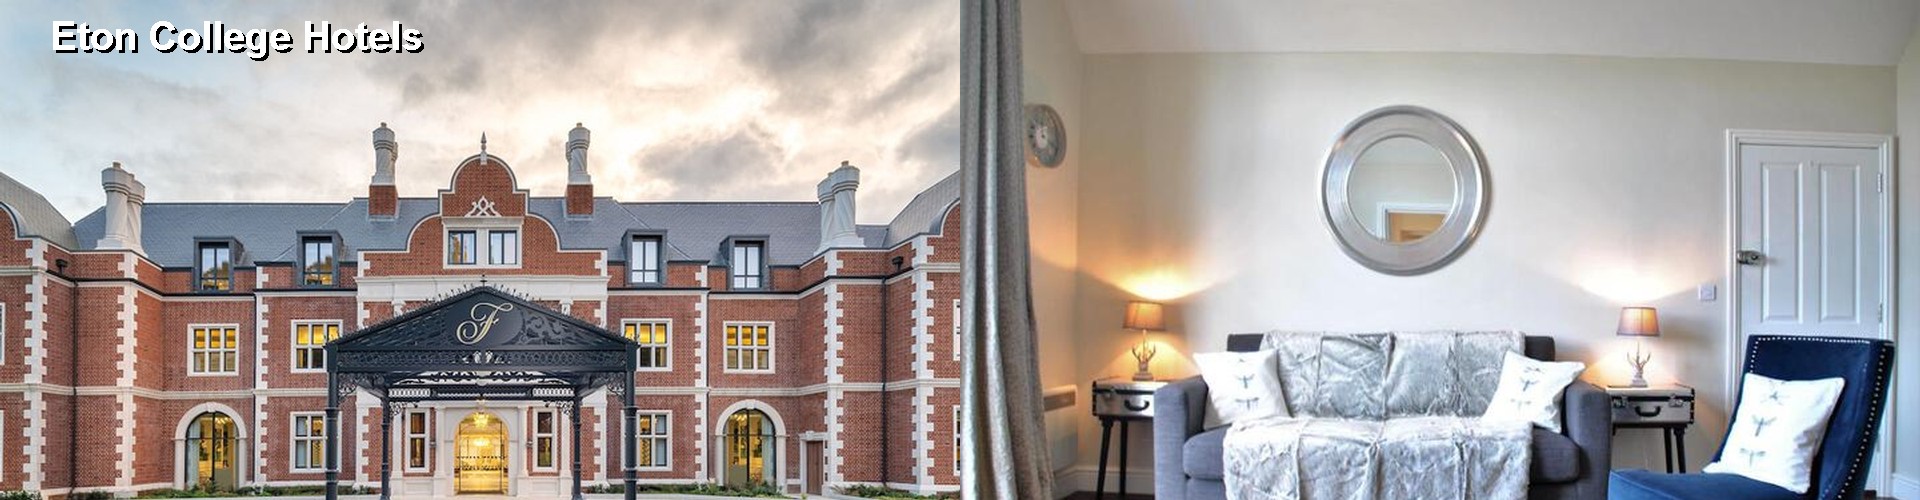 5 Best Hotels near Eton College